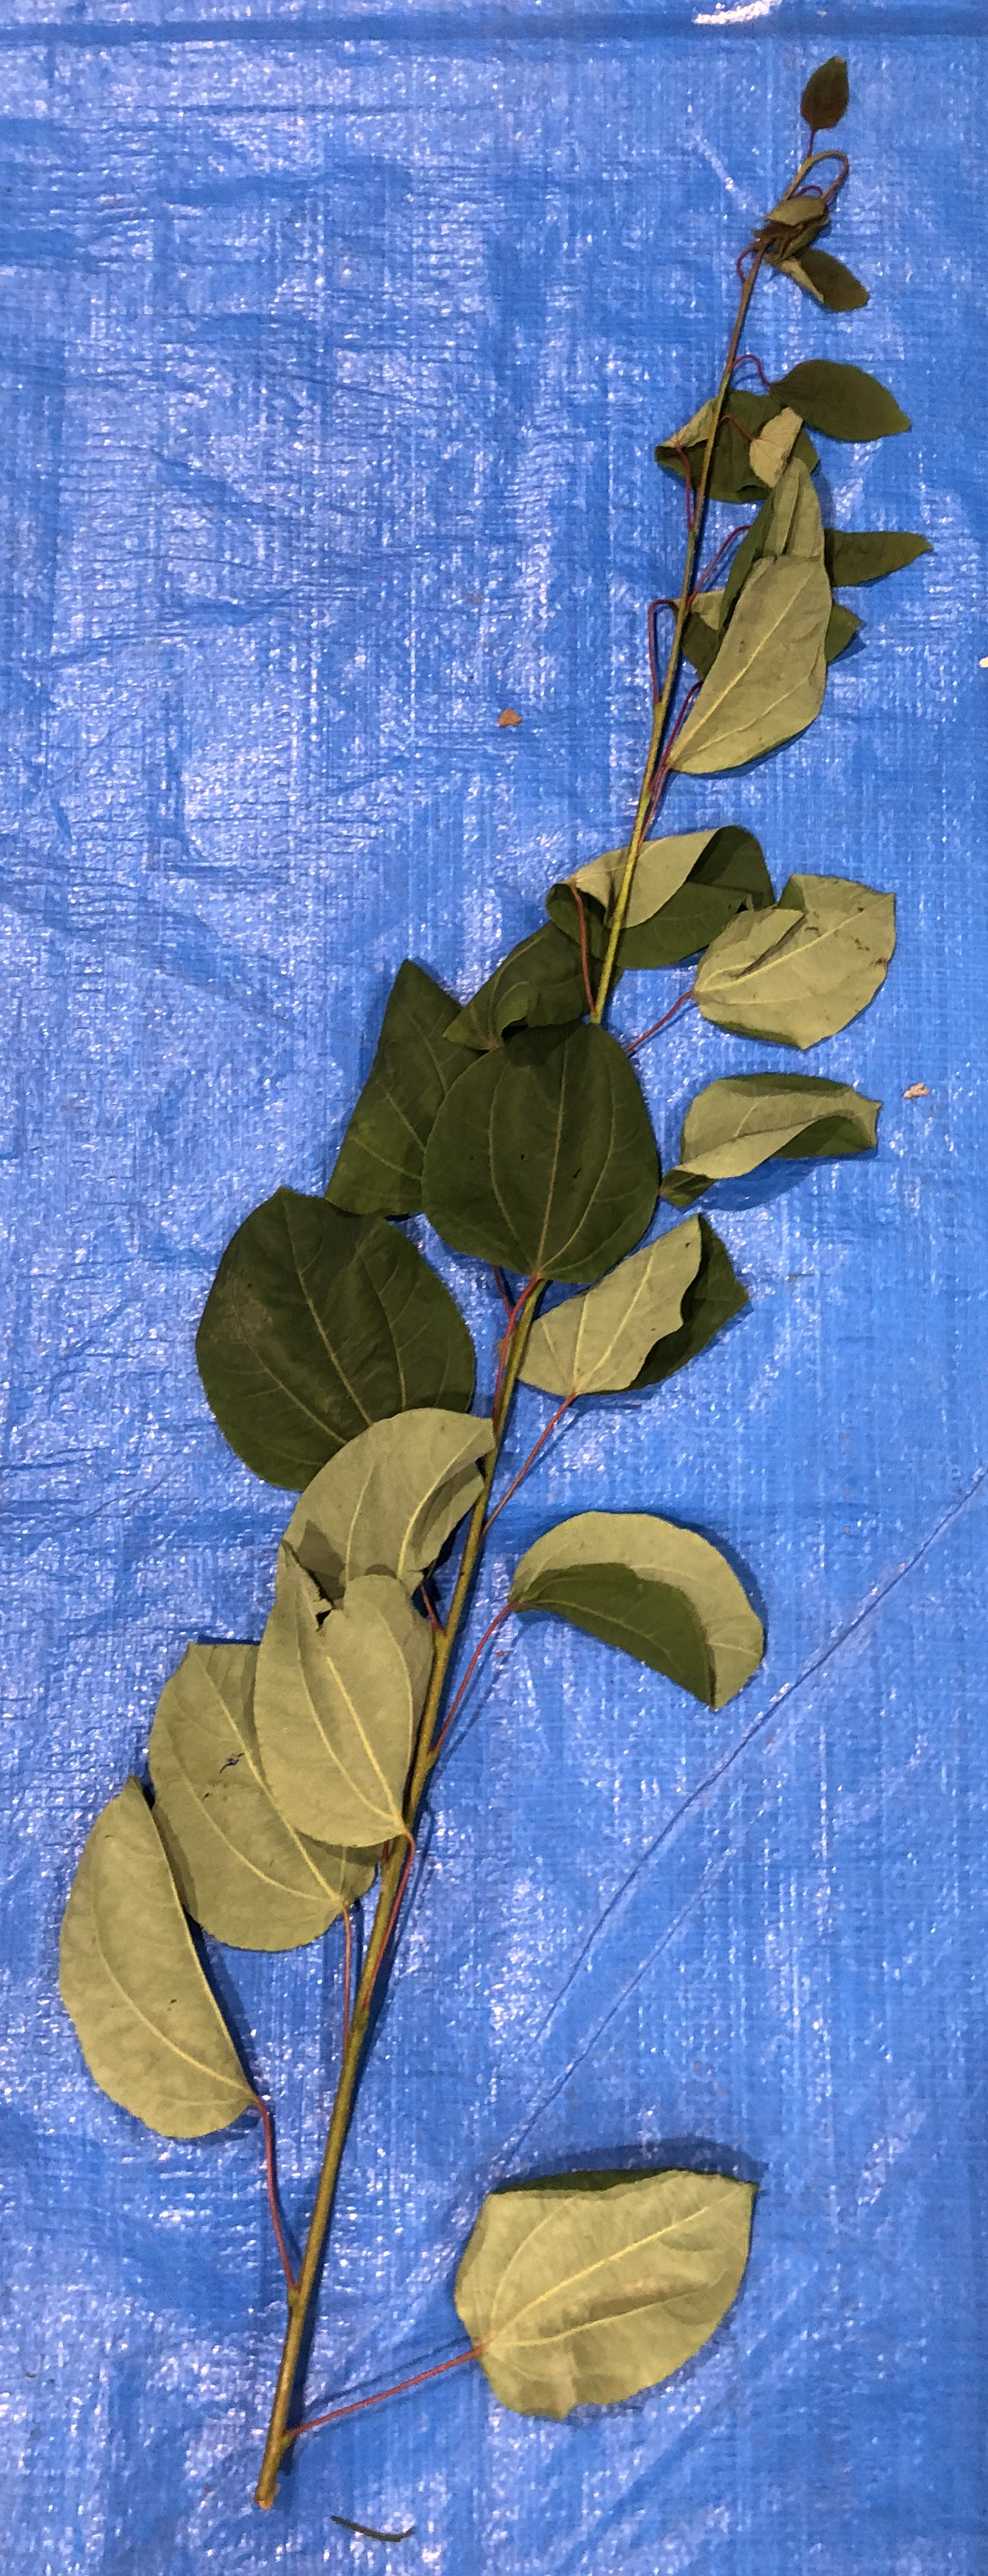 シダレカツラ - Cercidiphyllum japonicum